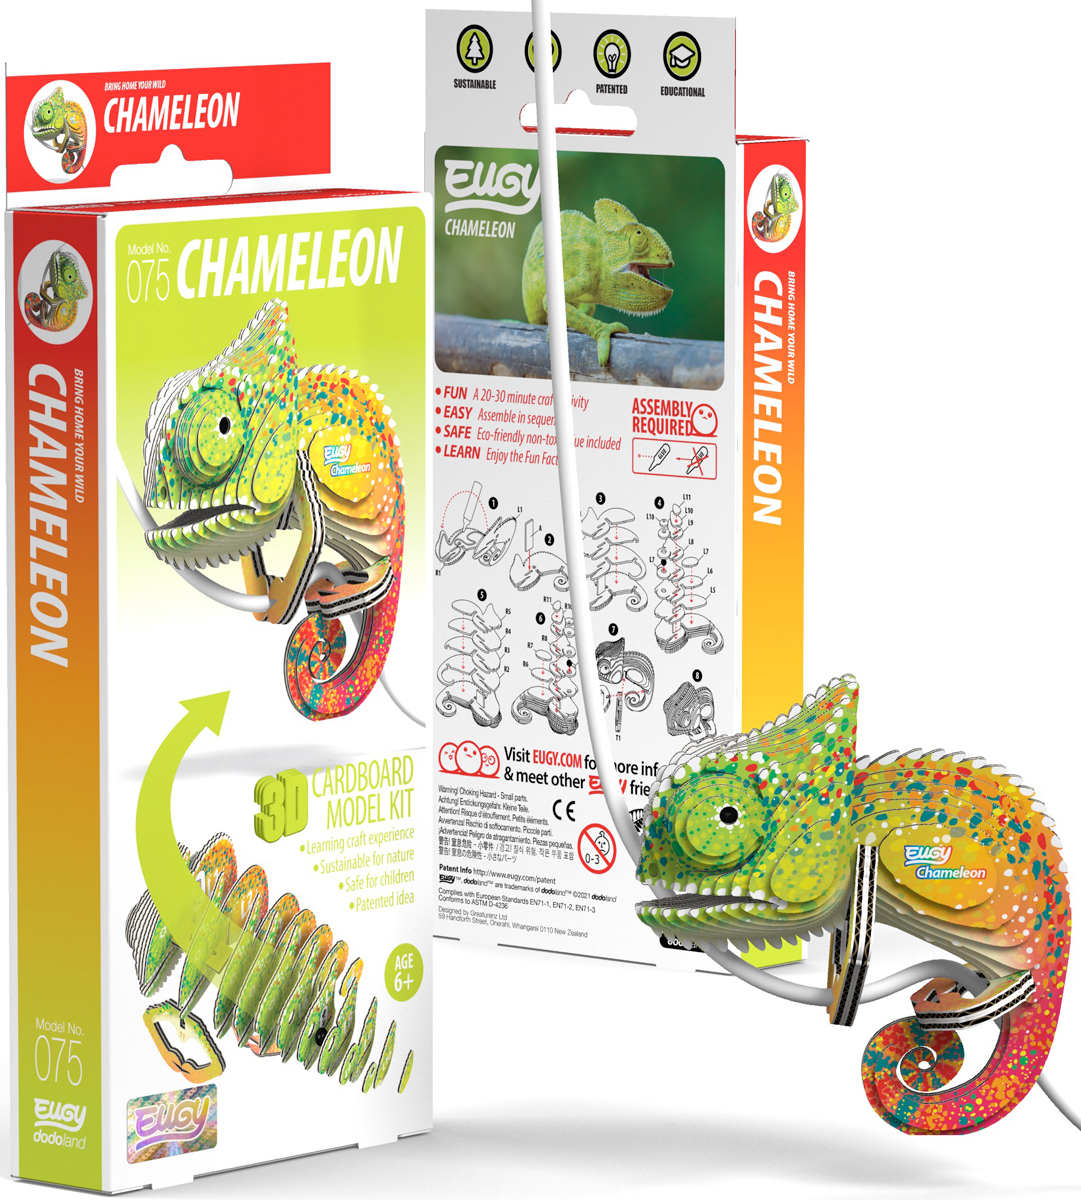 Chameleon Eugy